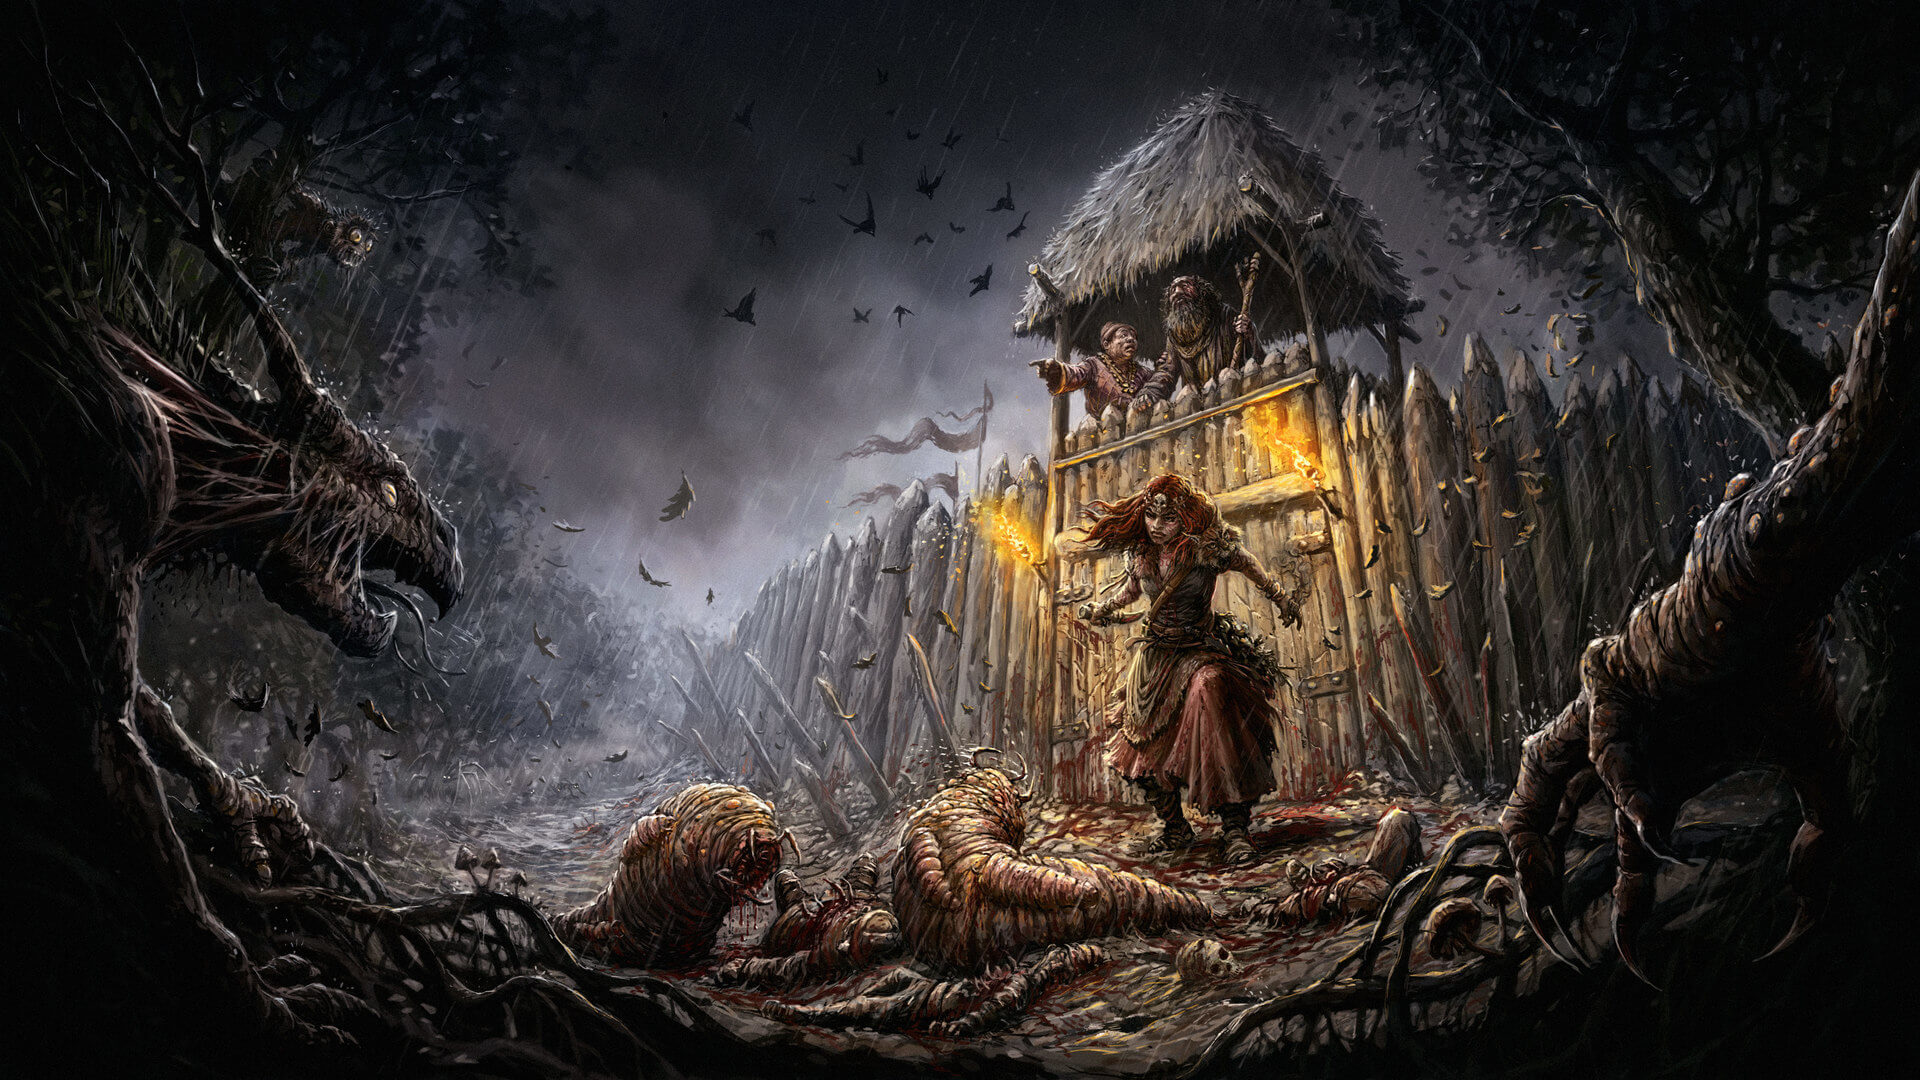 Dark Souls 2's anything-goes take on bleak fantasy makes for a wonderfully  memorable world